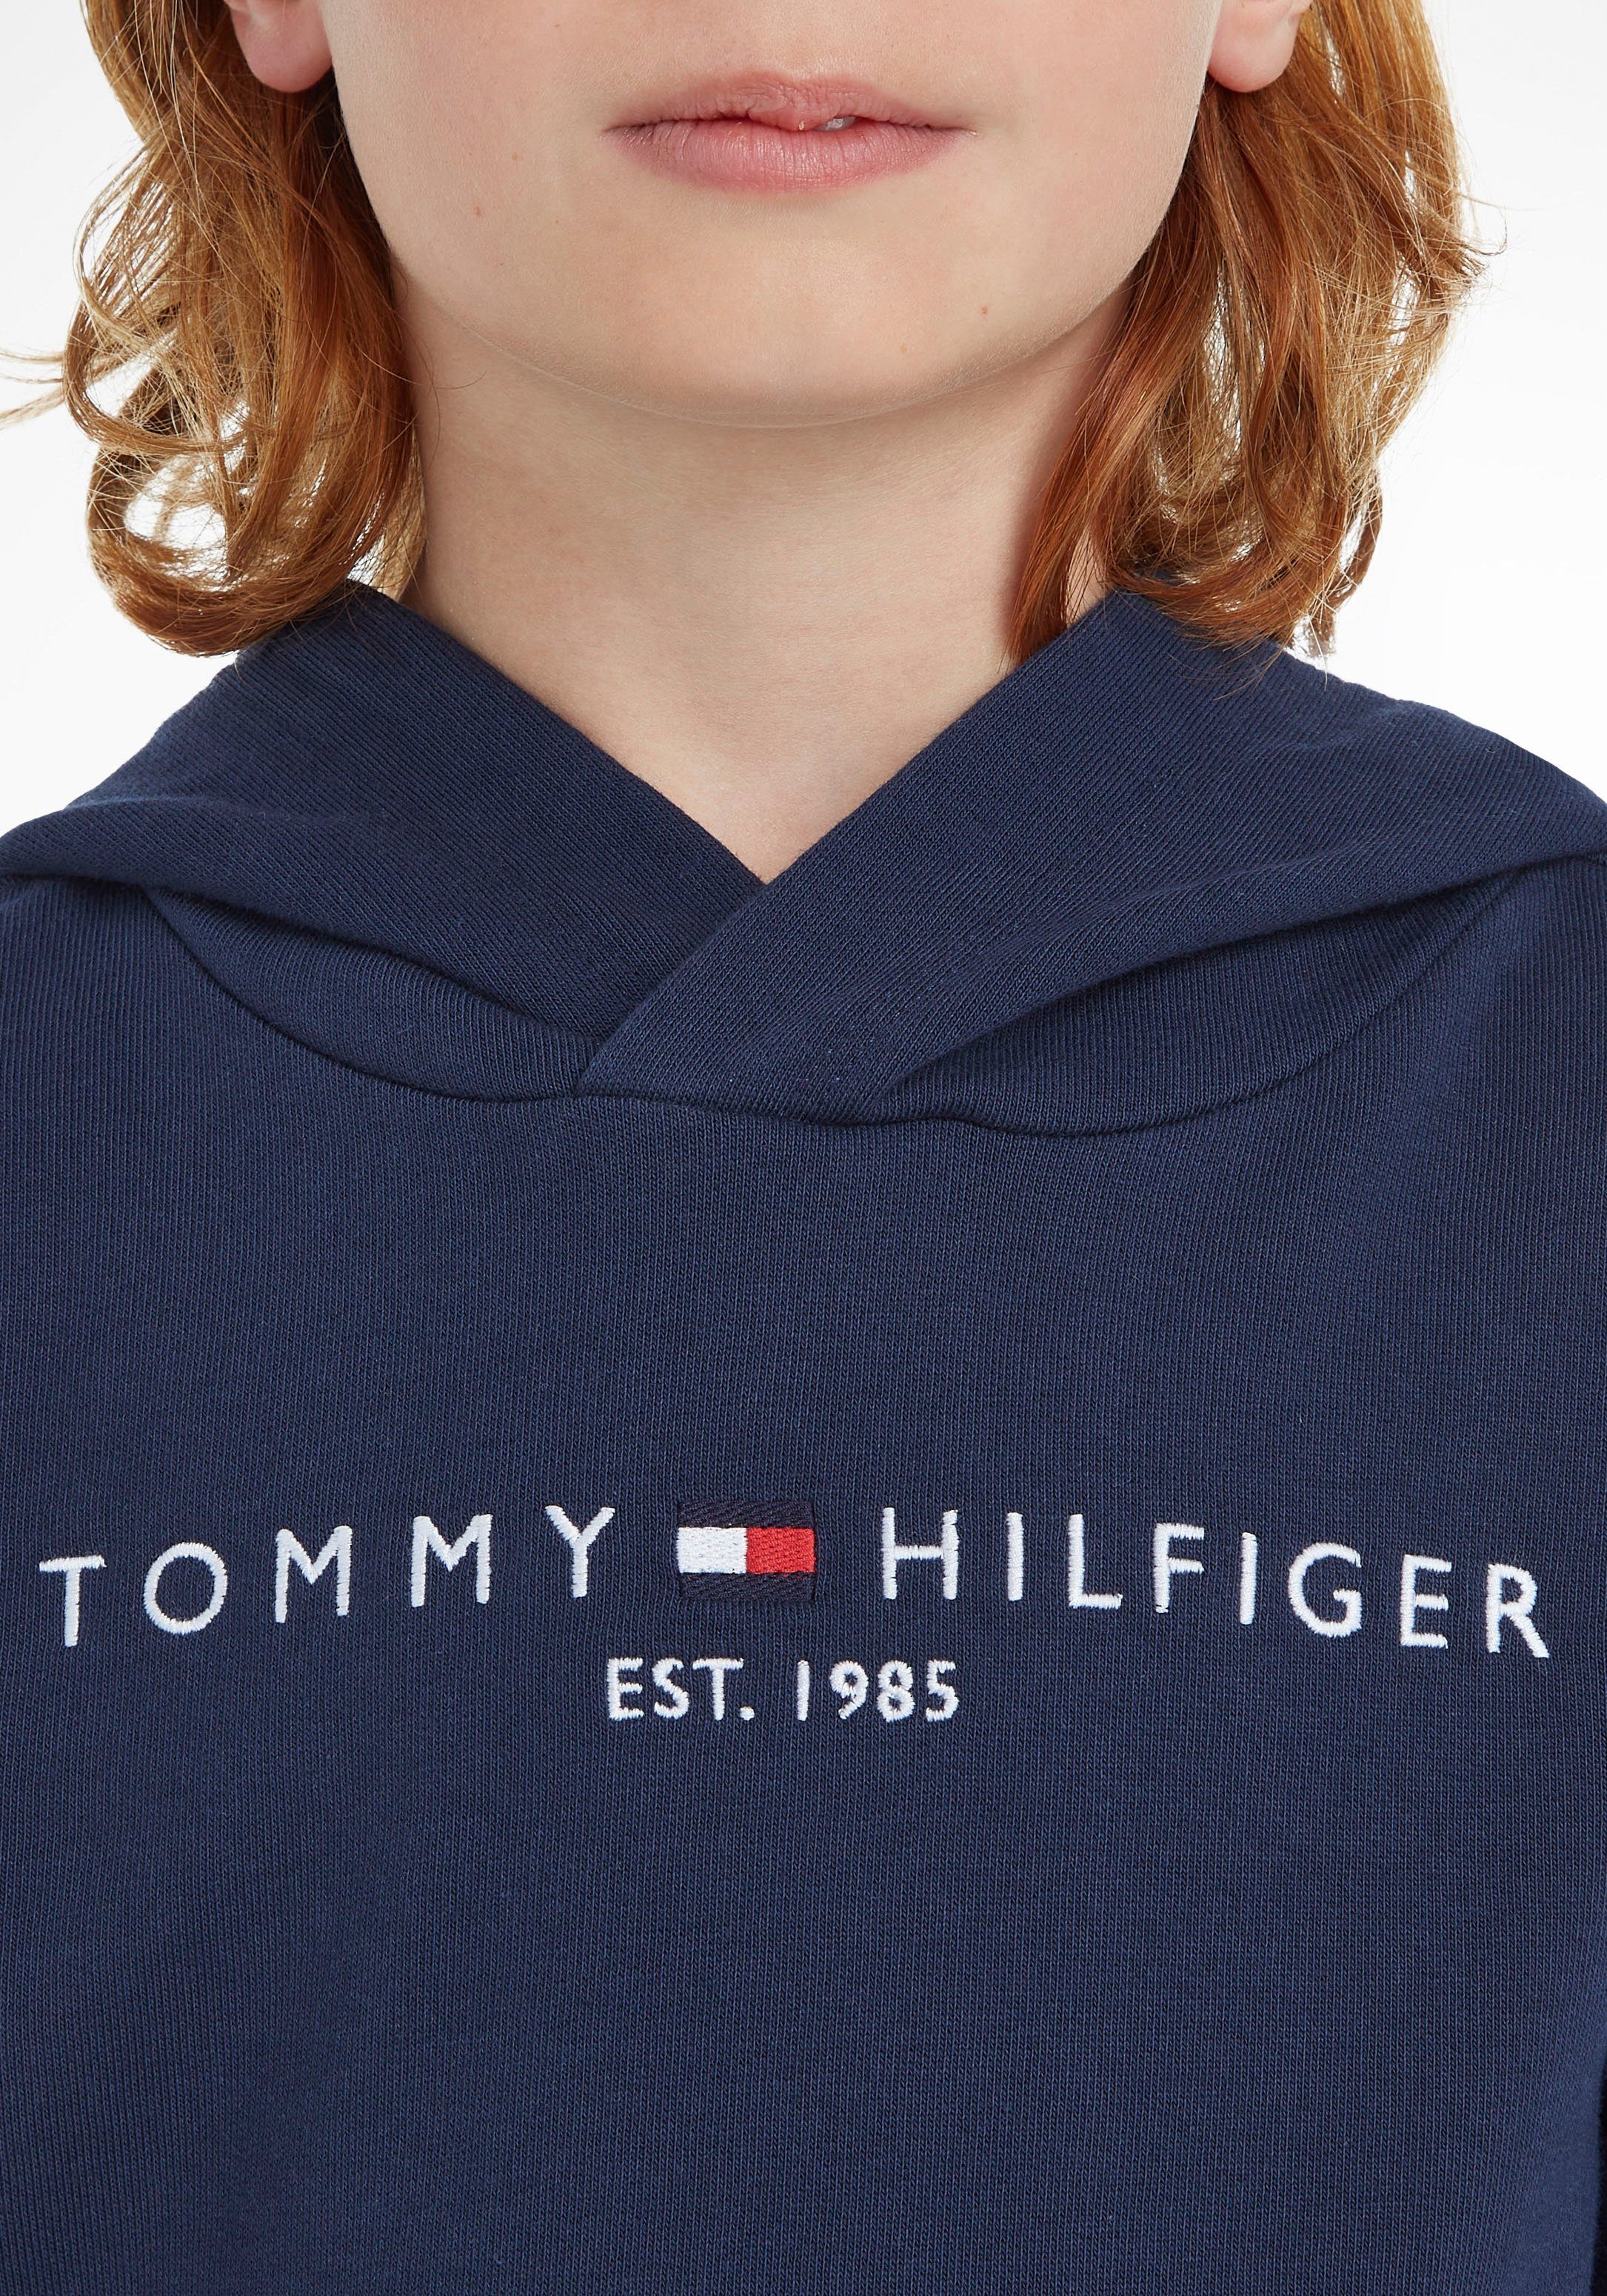 Mädchen Tommy Kids Kinder Junior Kapuzensweatshirt ESSENTIAL MiniMe,für und HOODIE Hilfiger Jungen